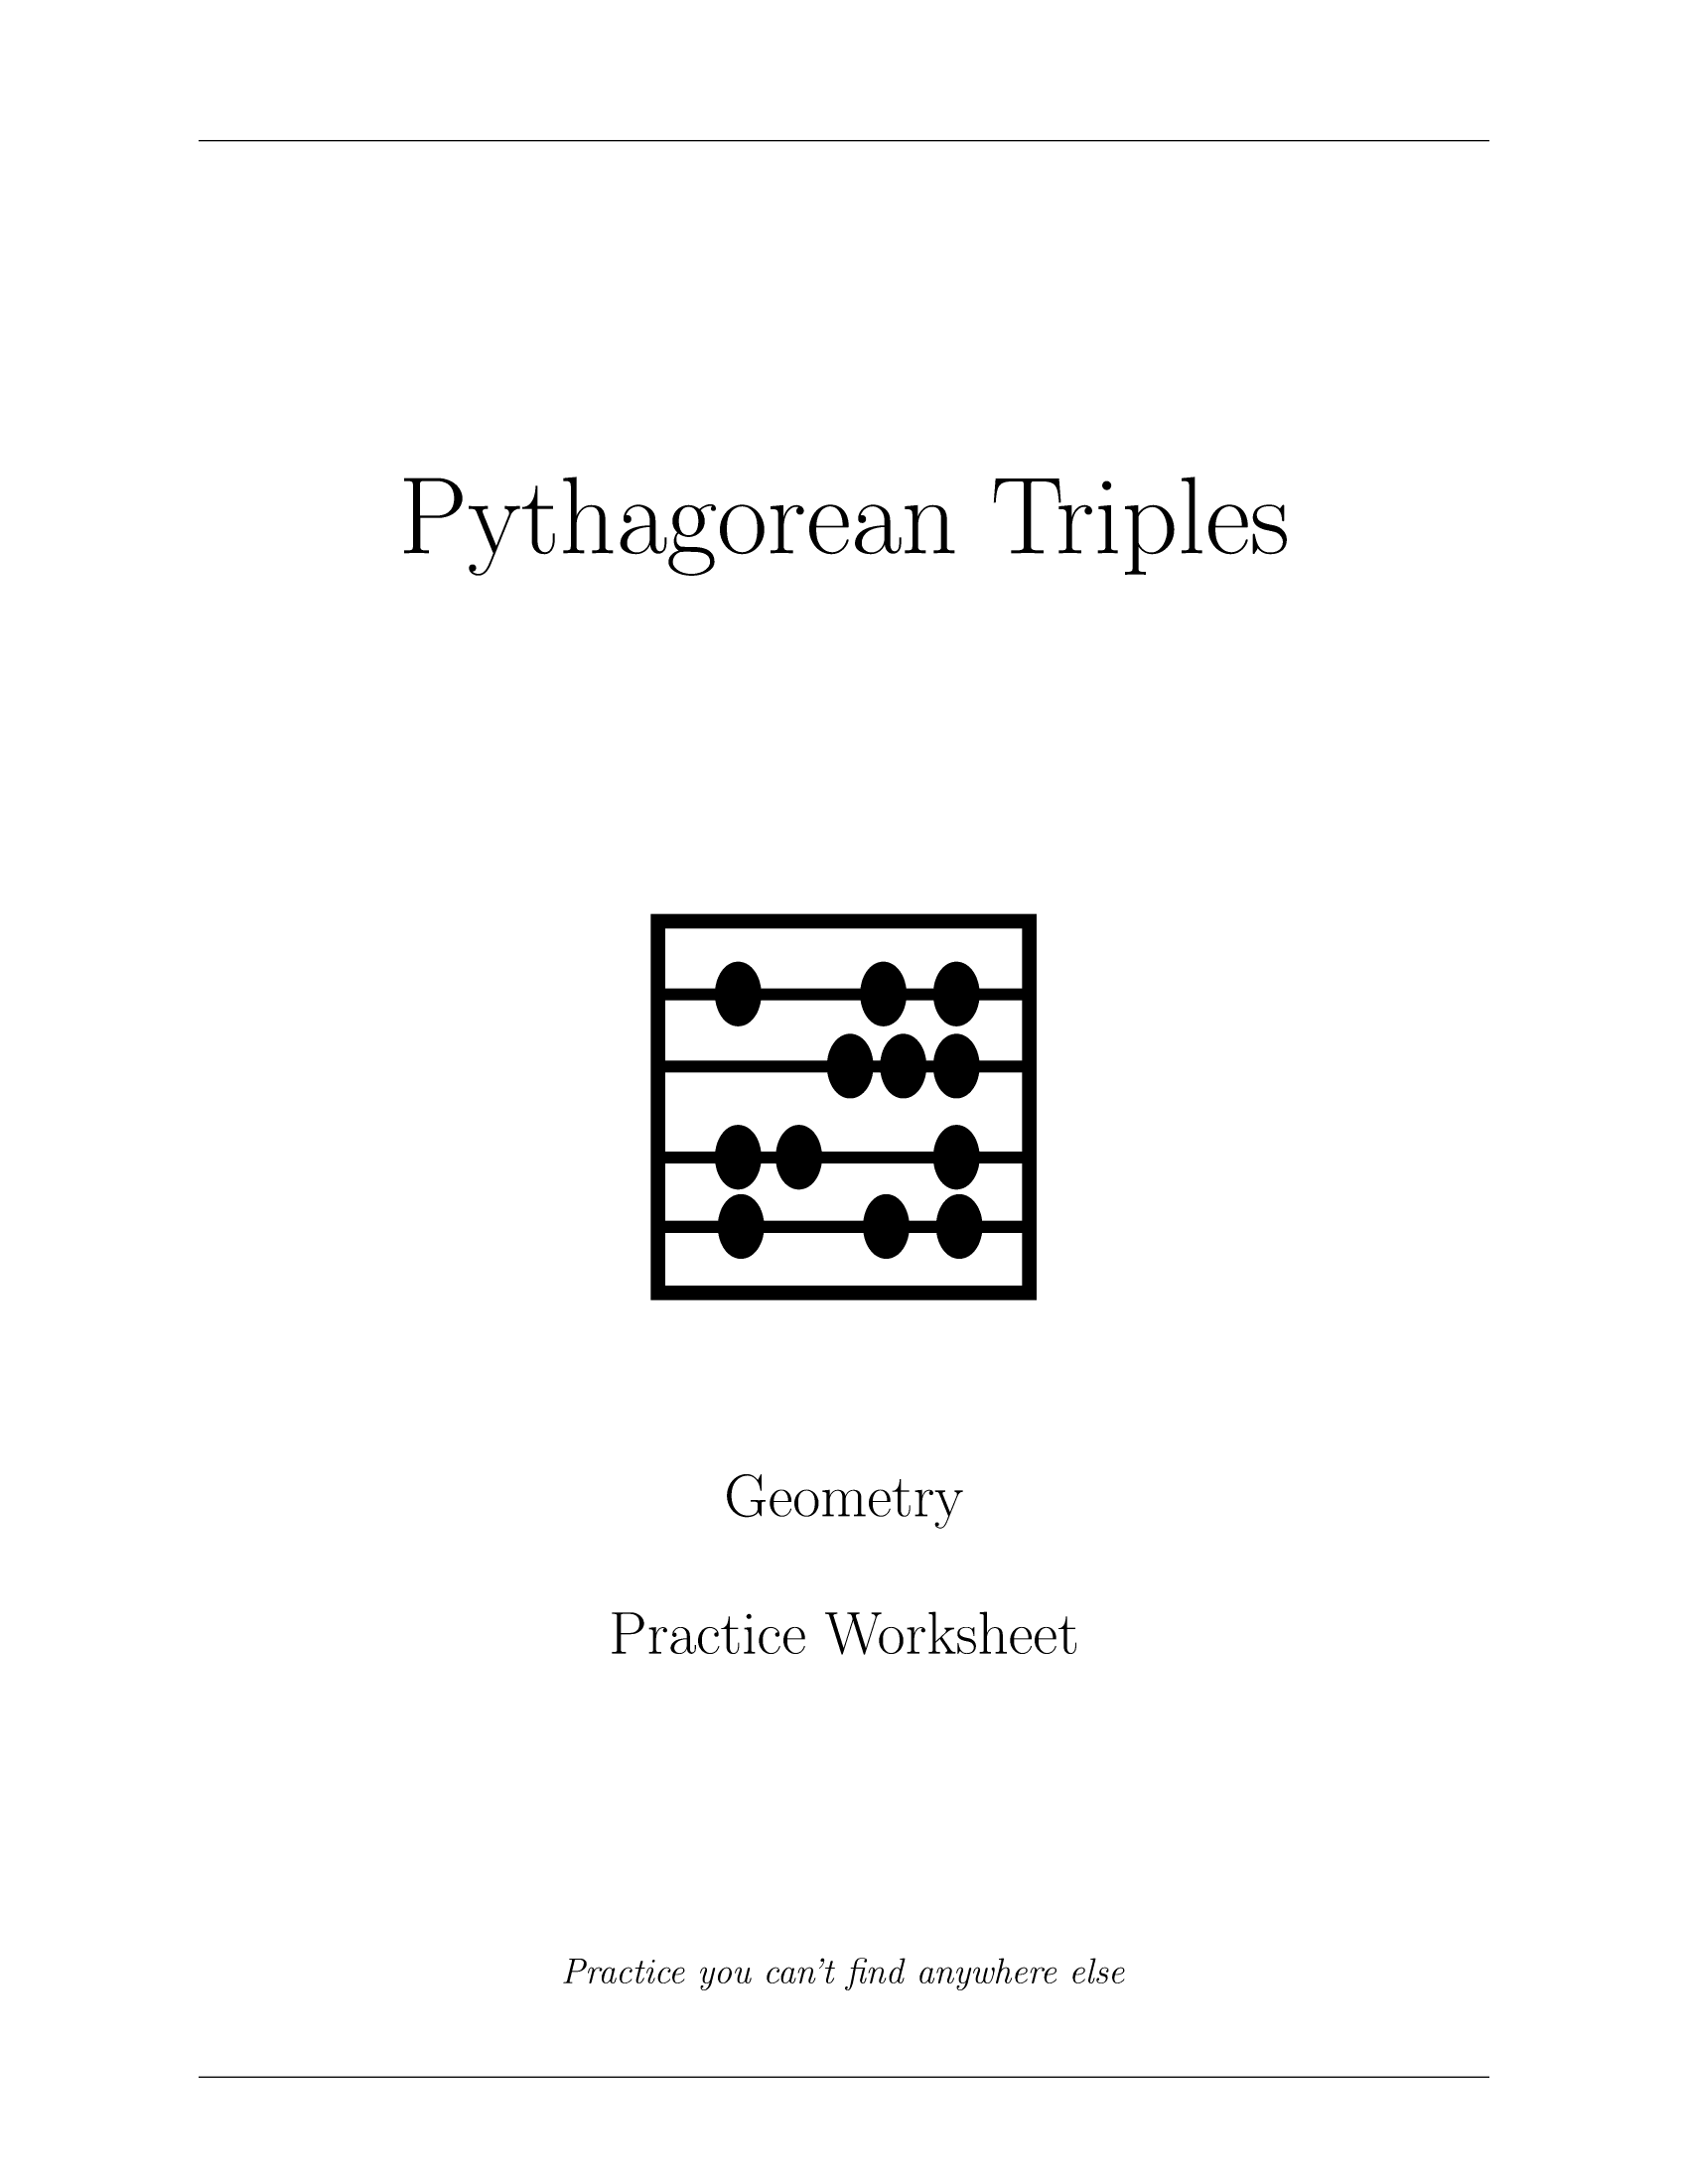 Pythagorean Triples Worksheet_1